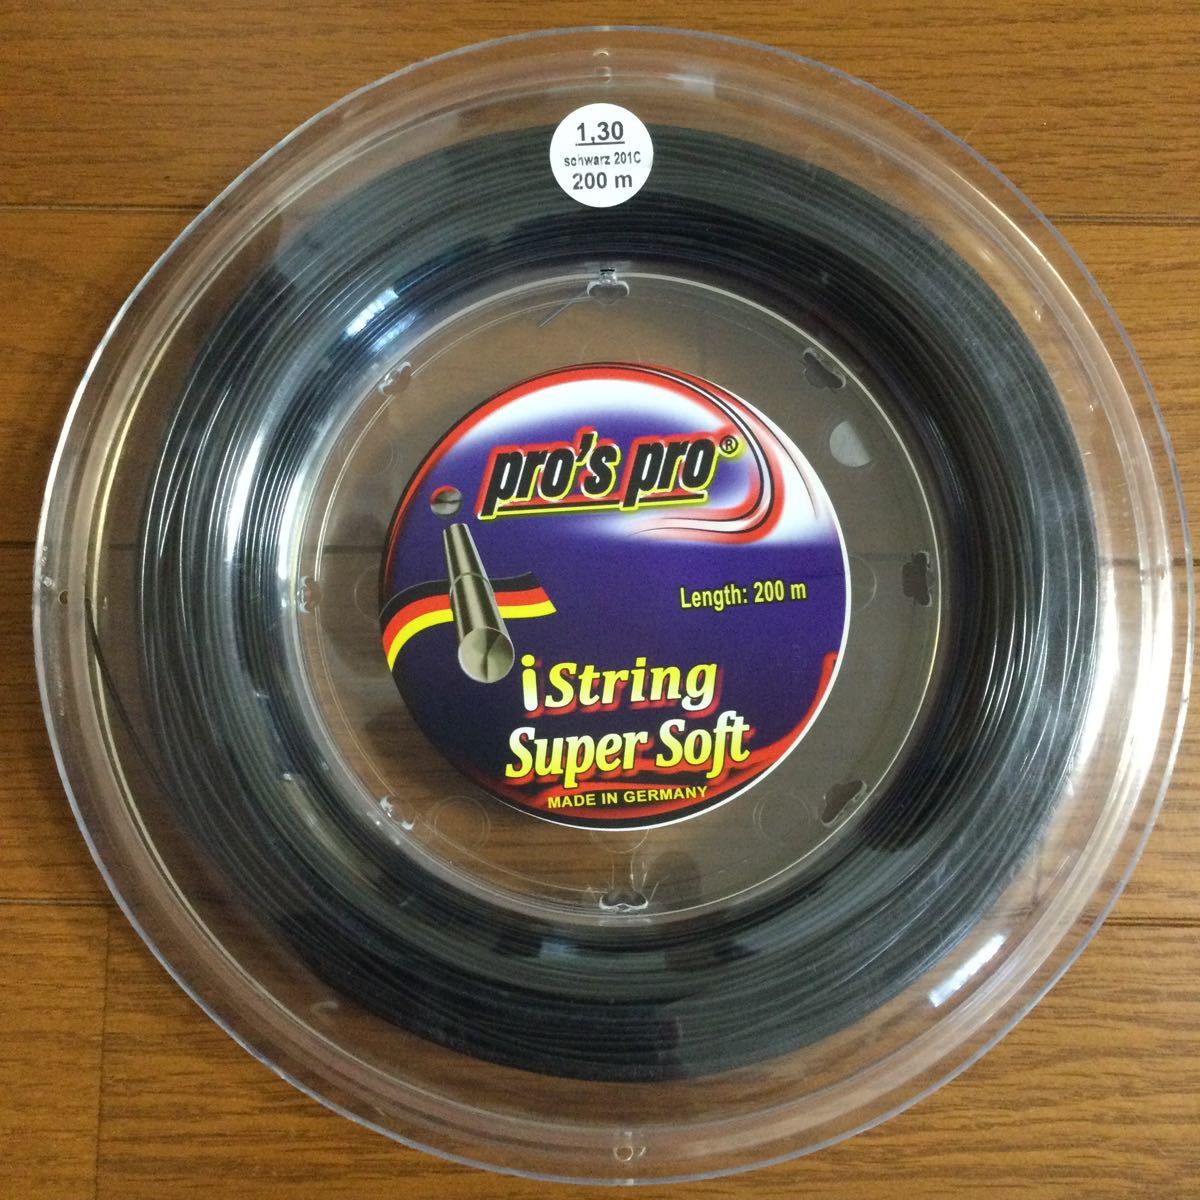 pro's pro iString Super soft(黒色) 1.30mm 200m テニスロールガット_画像1